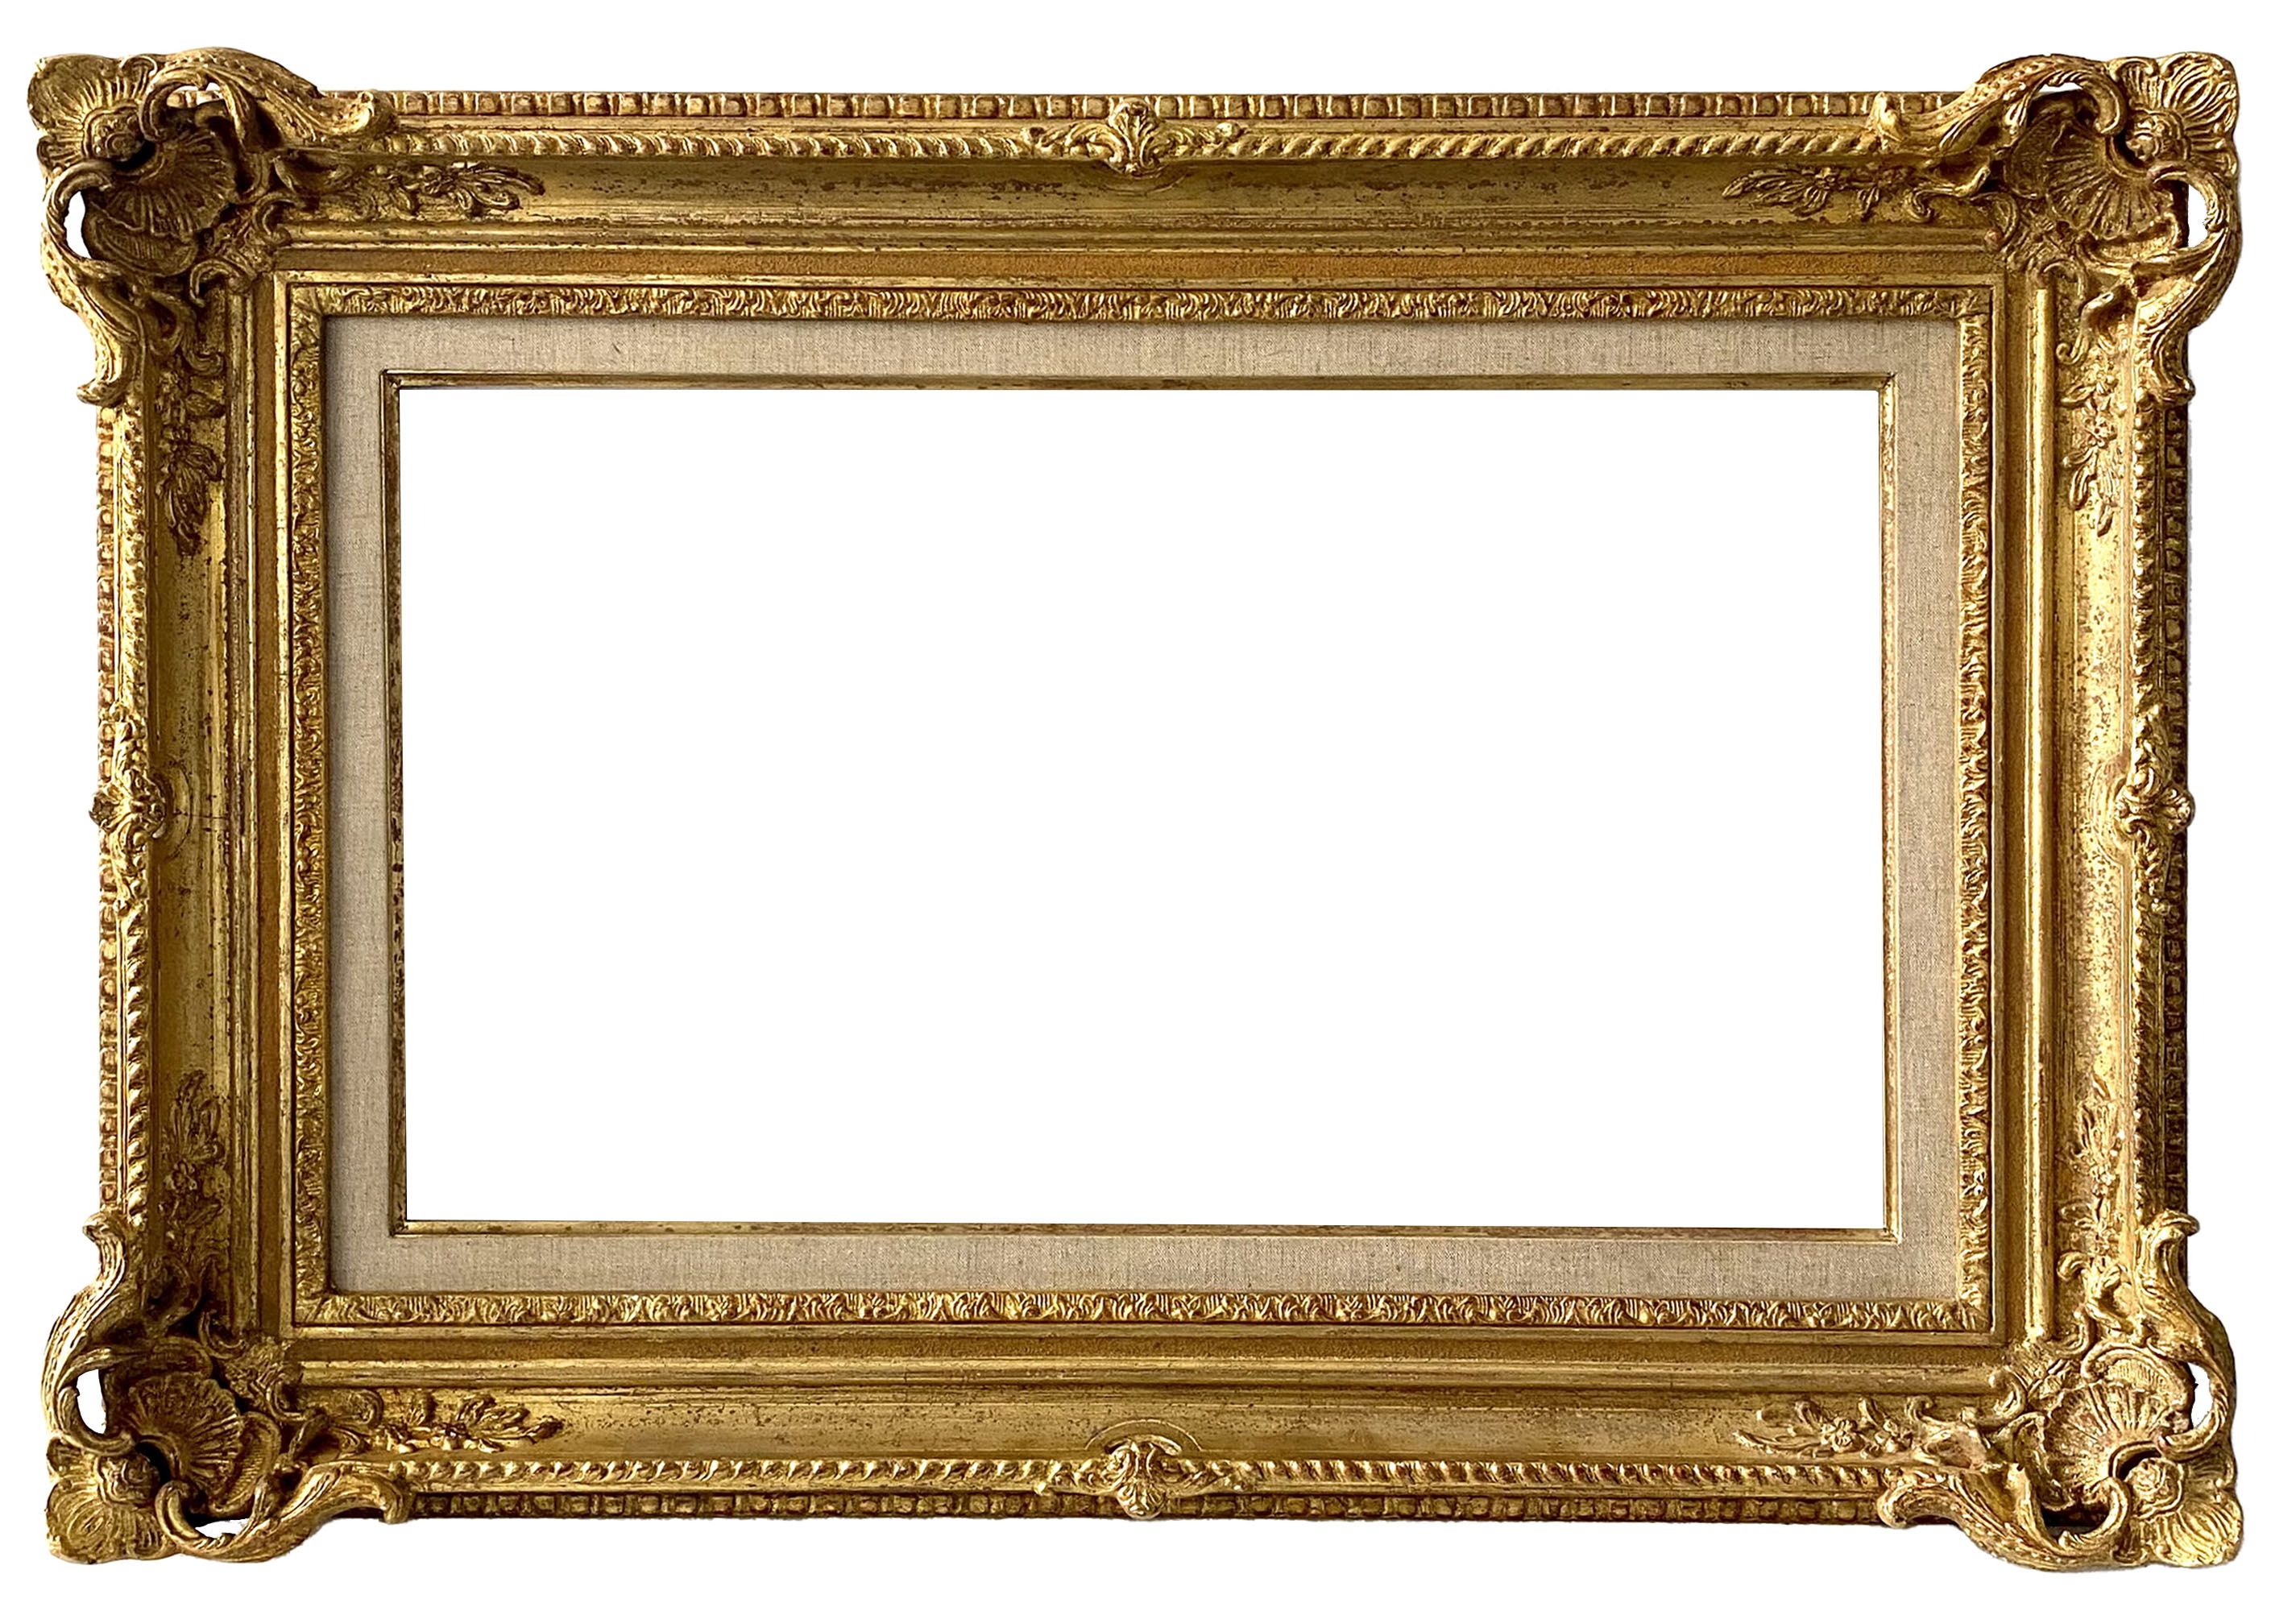 Cadre de style Louis XV - 57,60 x 33,80 - REF - 1515